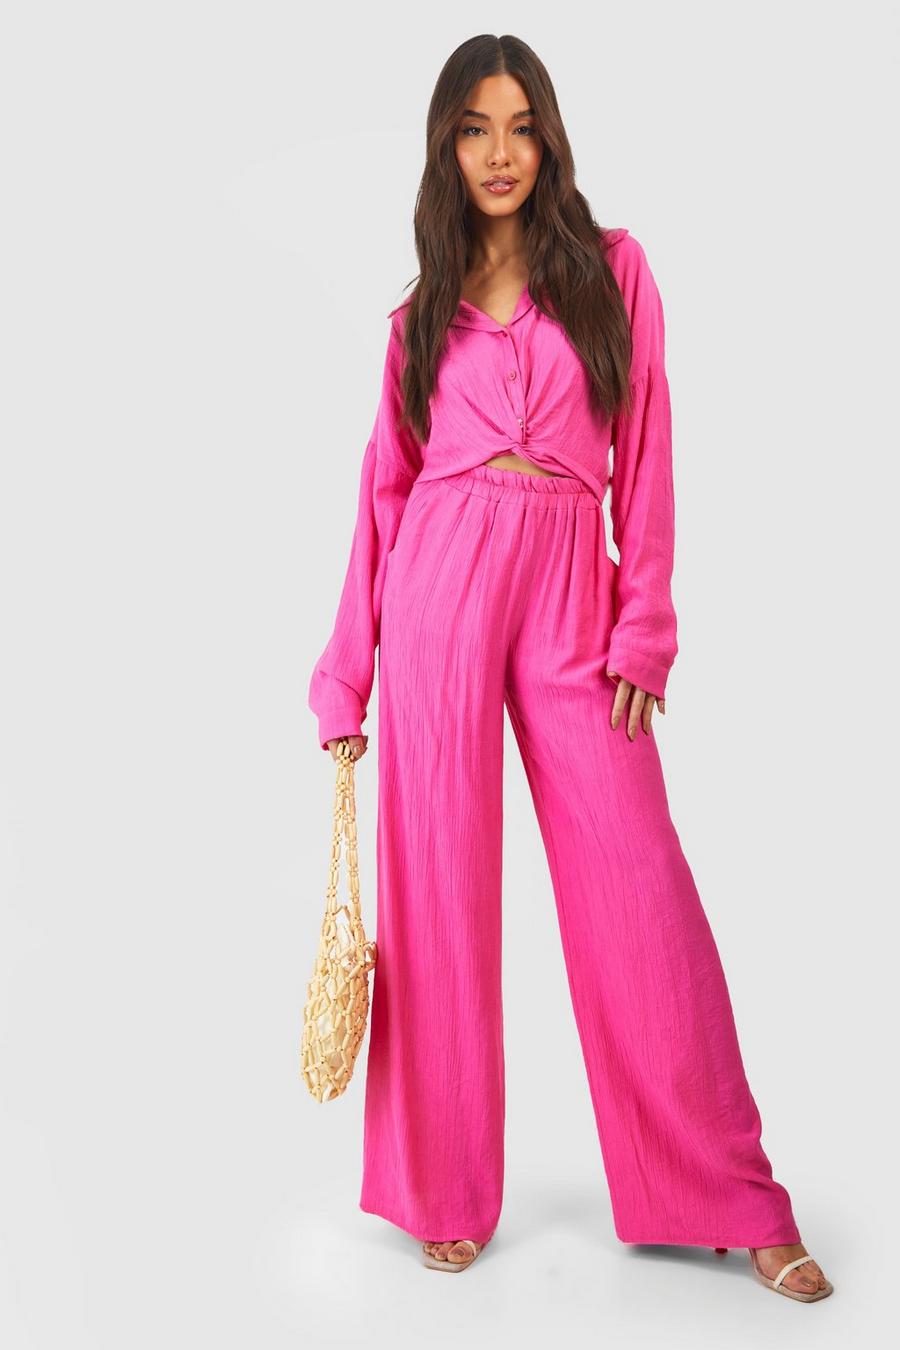 Pantalon texturé large, Hot pink